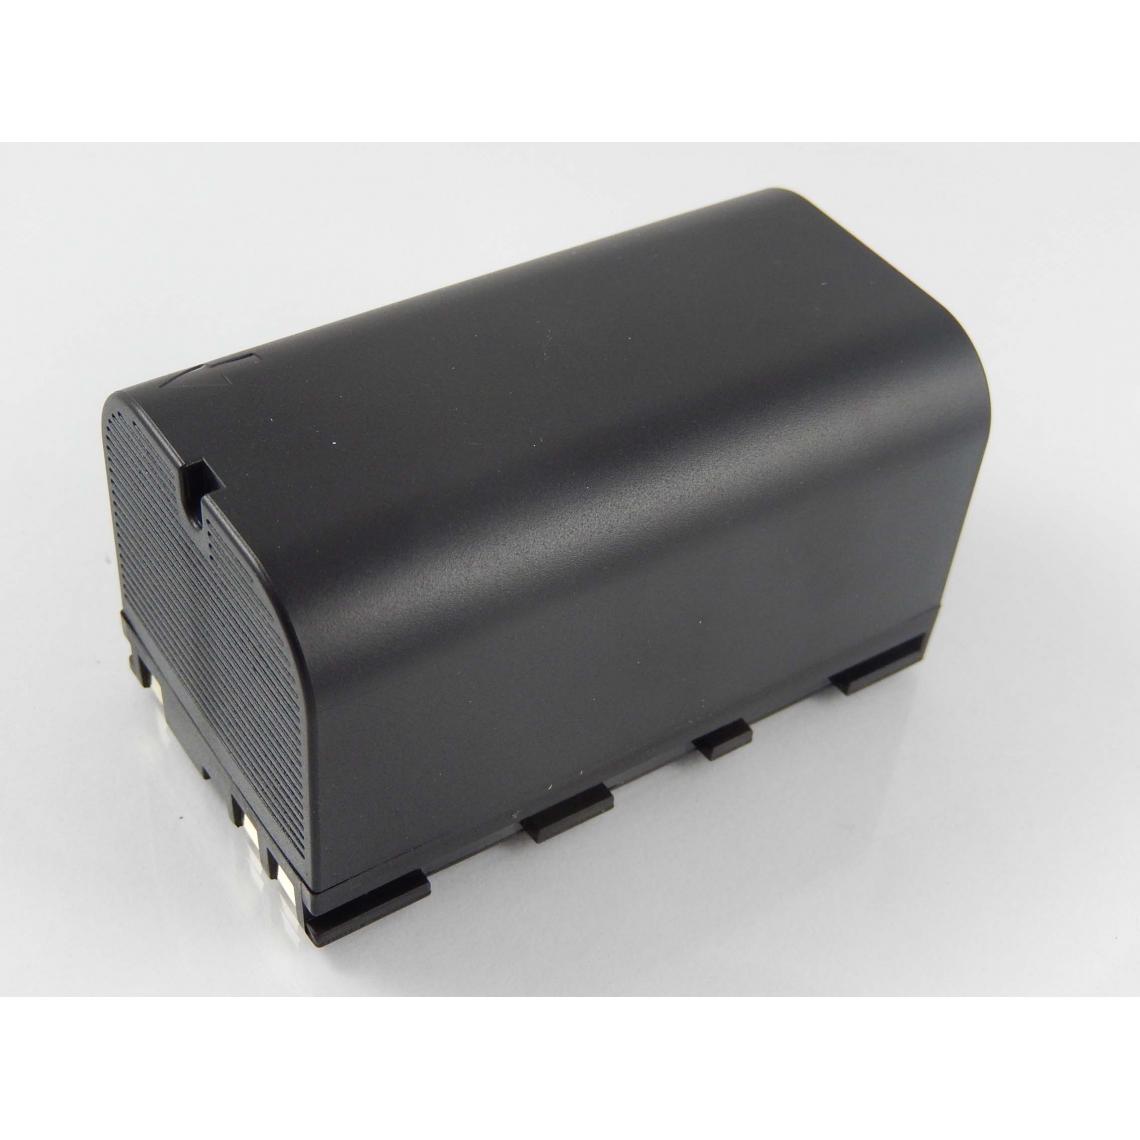 Vhbw - vhbw Batterie compatible avec Leica GS20, RCS1100, RX1200, RX900 dispositif de mesure laser, outil de mesure (5600mAh, 7,4V, Li-ion) - Piles rechargeables